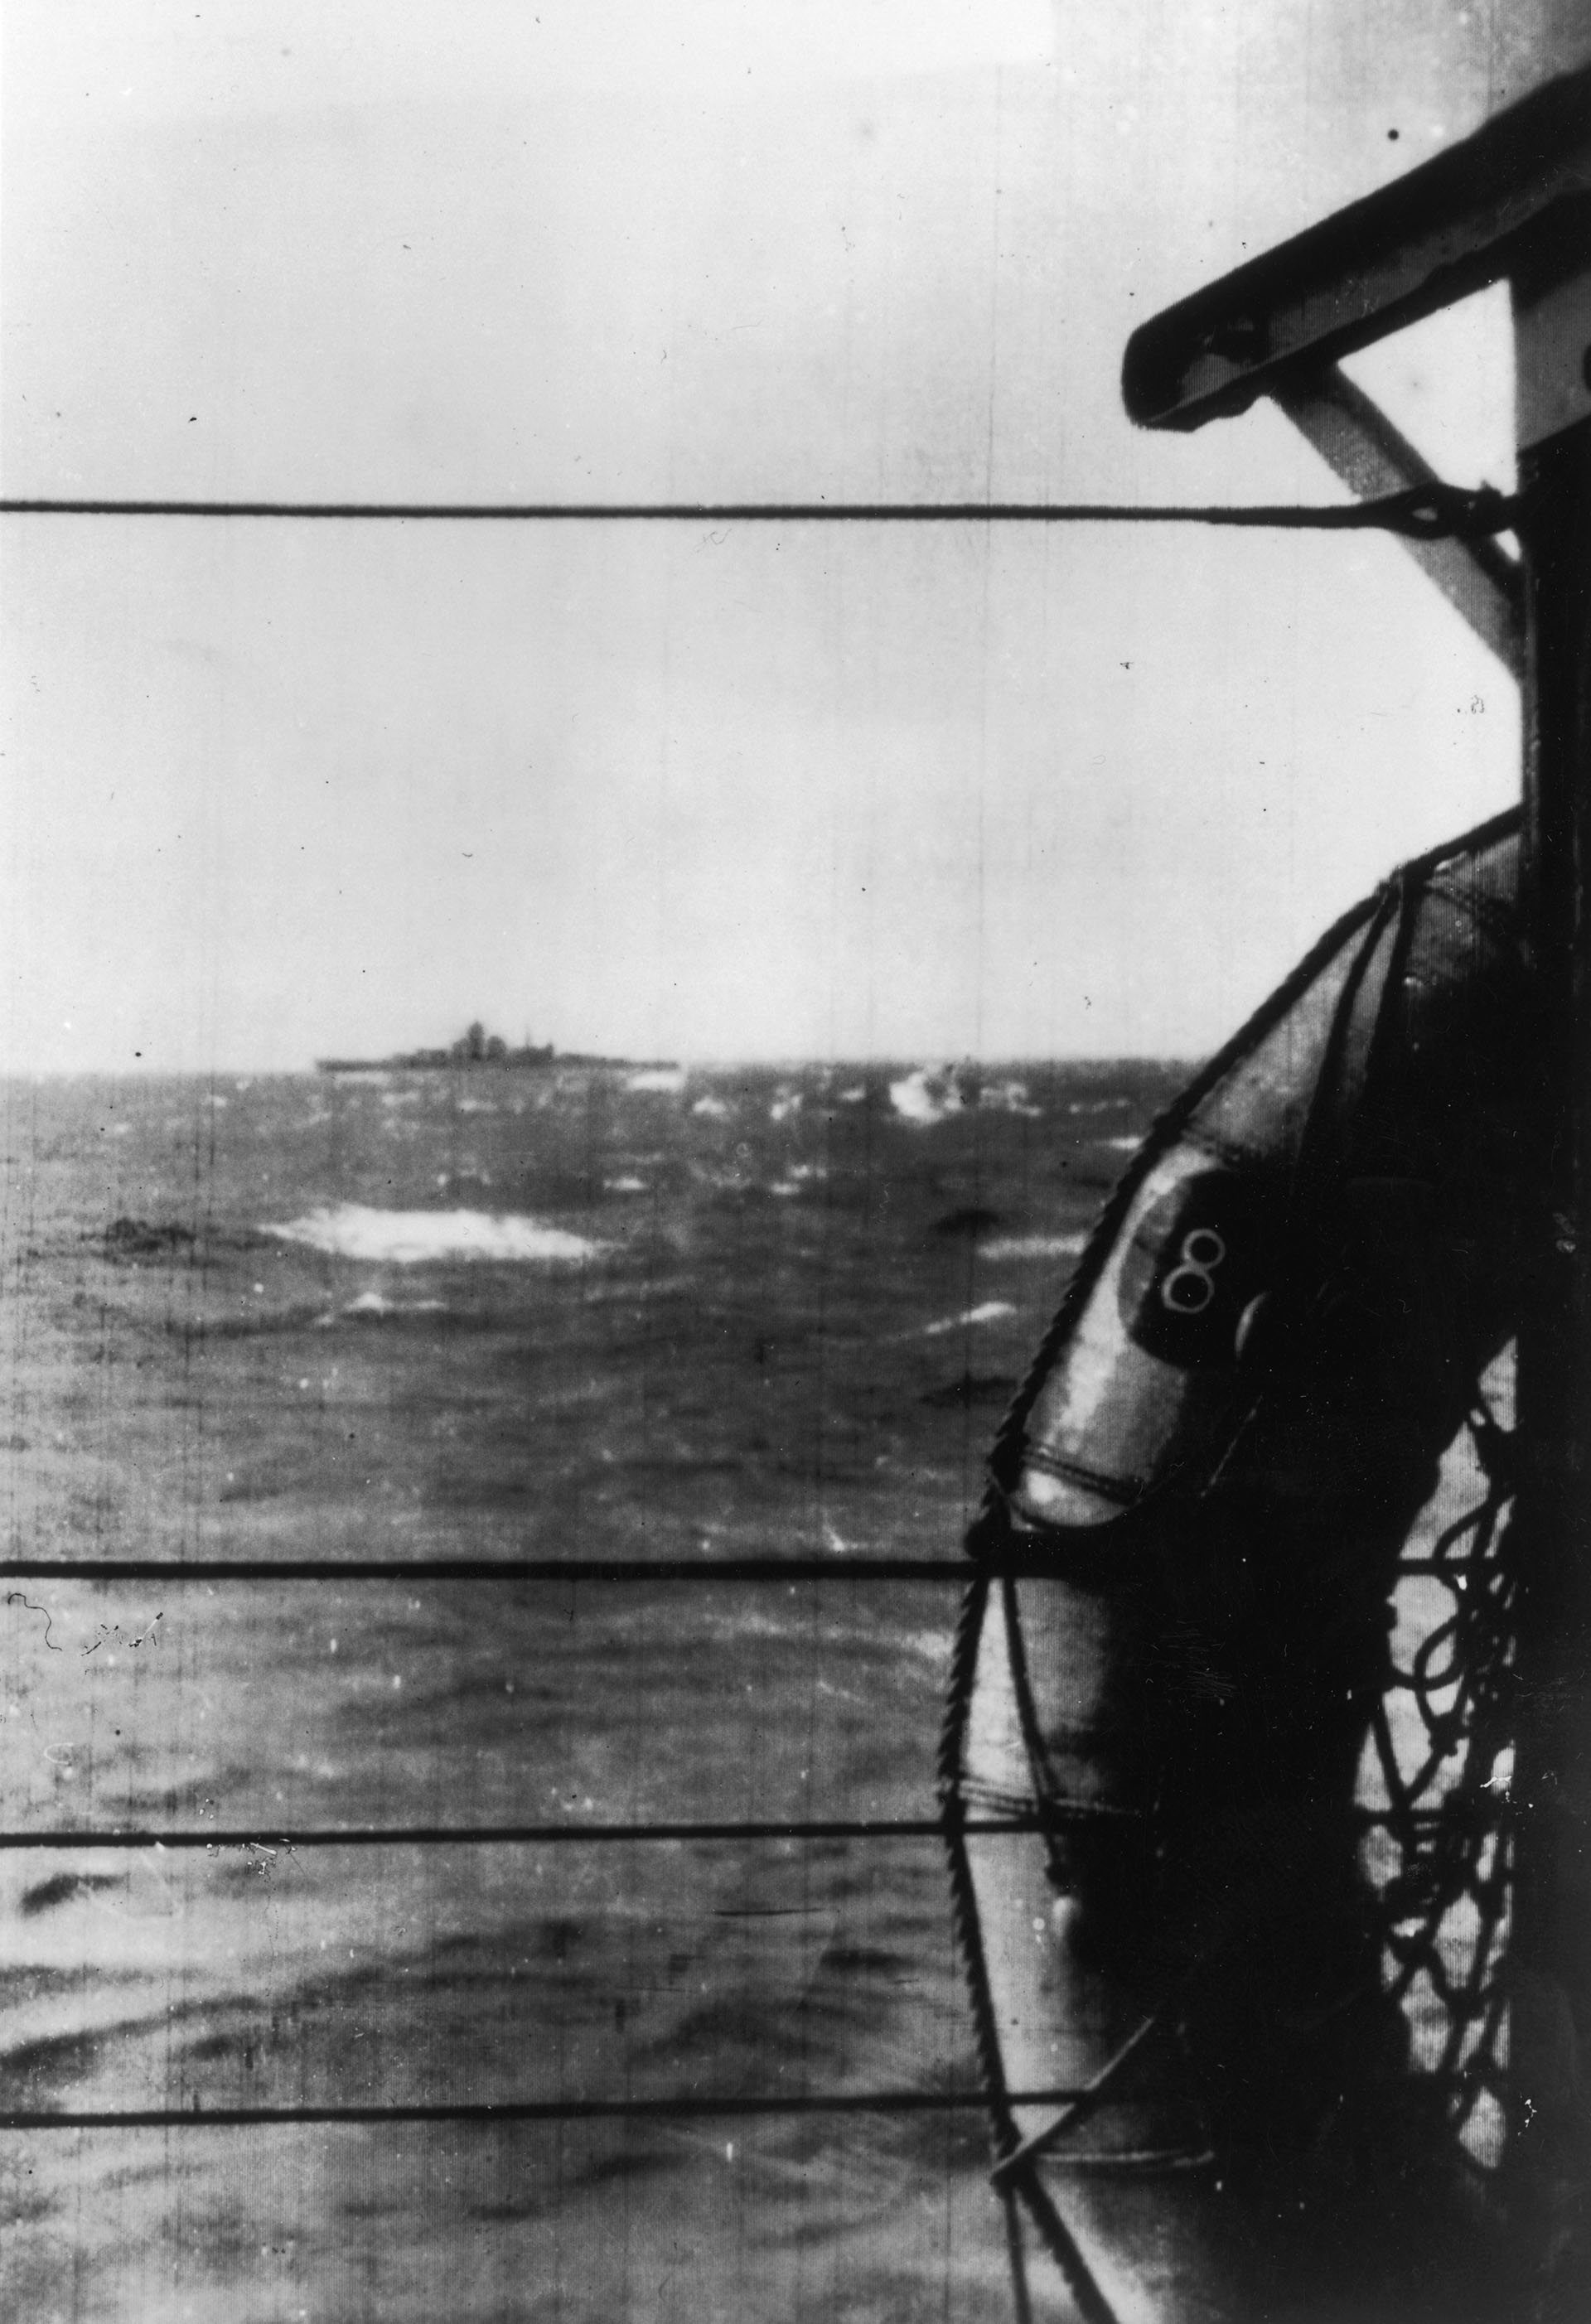 27 de mayo de 1941: La última vista del preciado acorazado de la armada alemana, el Bismarck, antes de que fuera hundido (Keystone/Getty Images)
